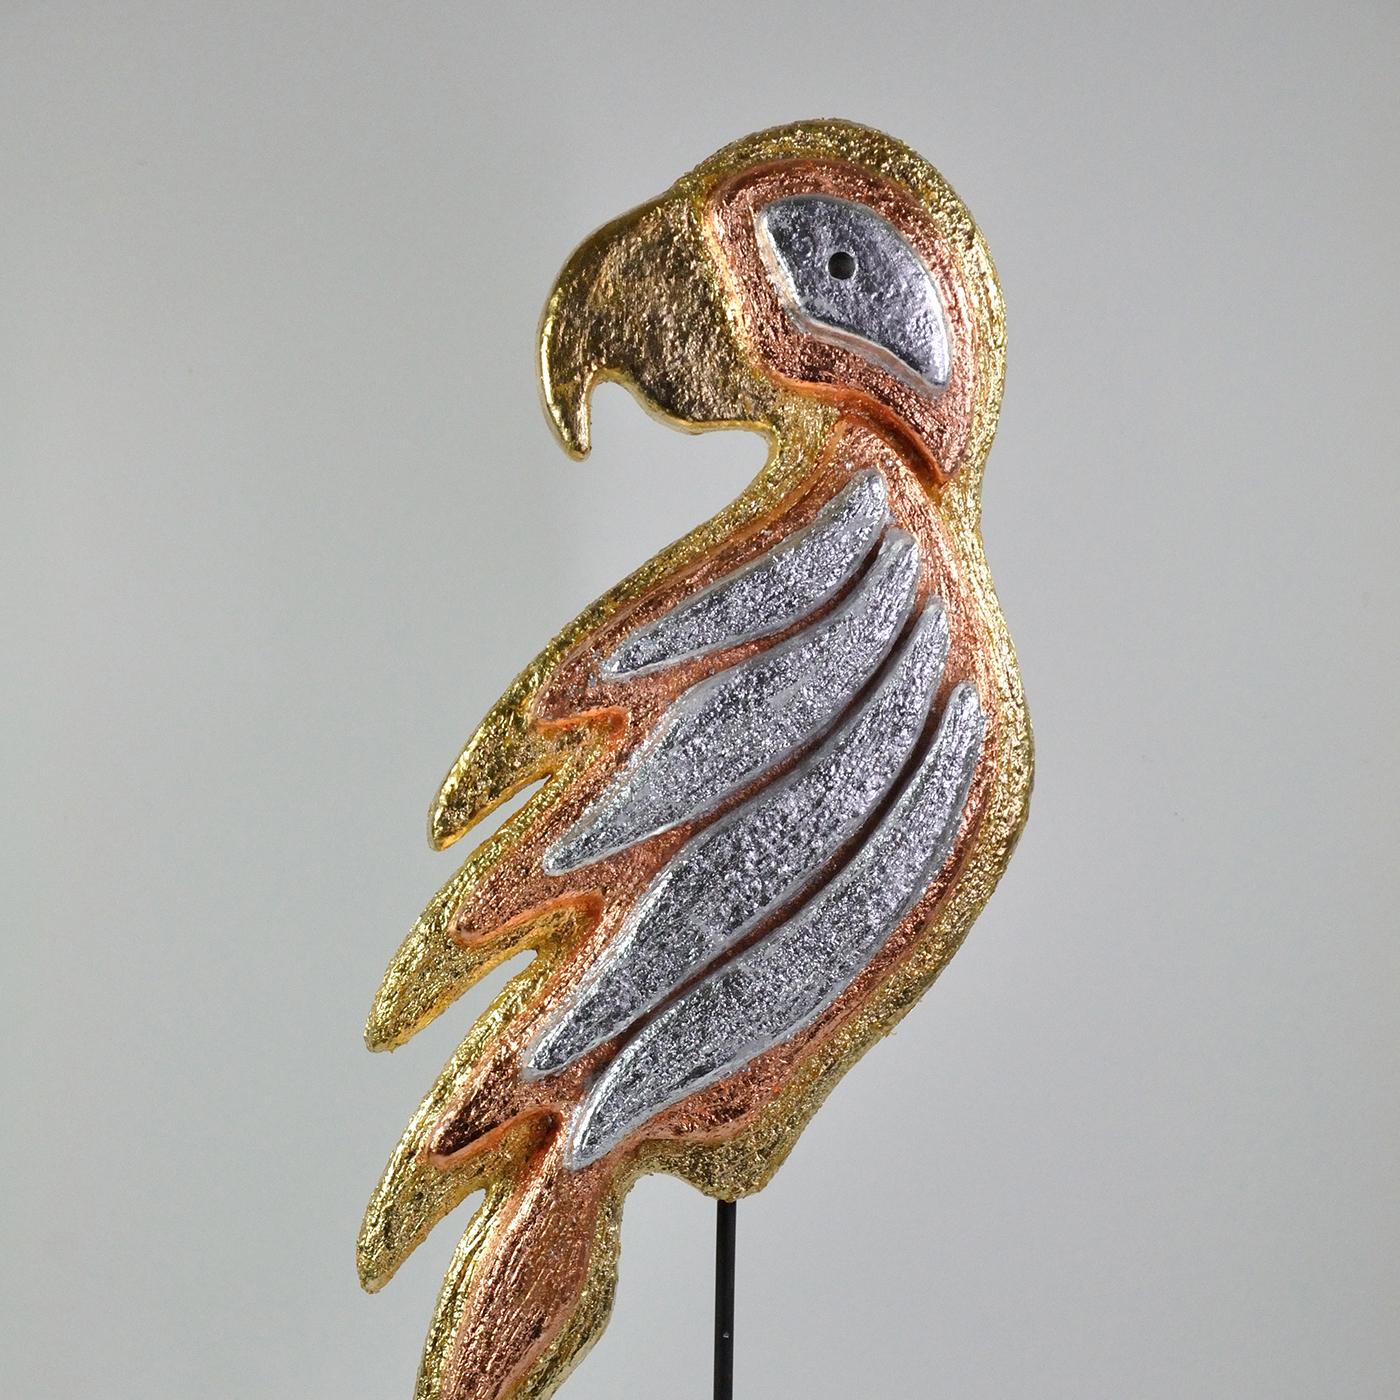 Diese zoomorphe Skulptur in Form eines mehrfarbigen Papageis, die exotische Atmosphären heraufbeschwört, ist eine gekonnte Demonstration von Handwerkskunst, angereichert mit einer Kombination aus Silber-, Gold- und Kupferblättern, die ihr eine